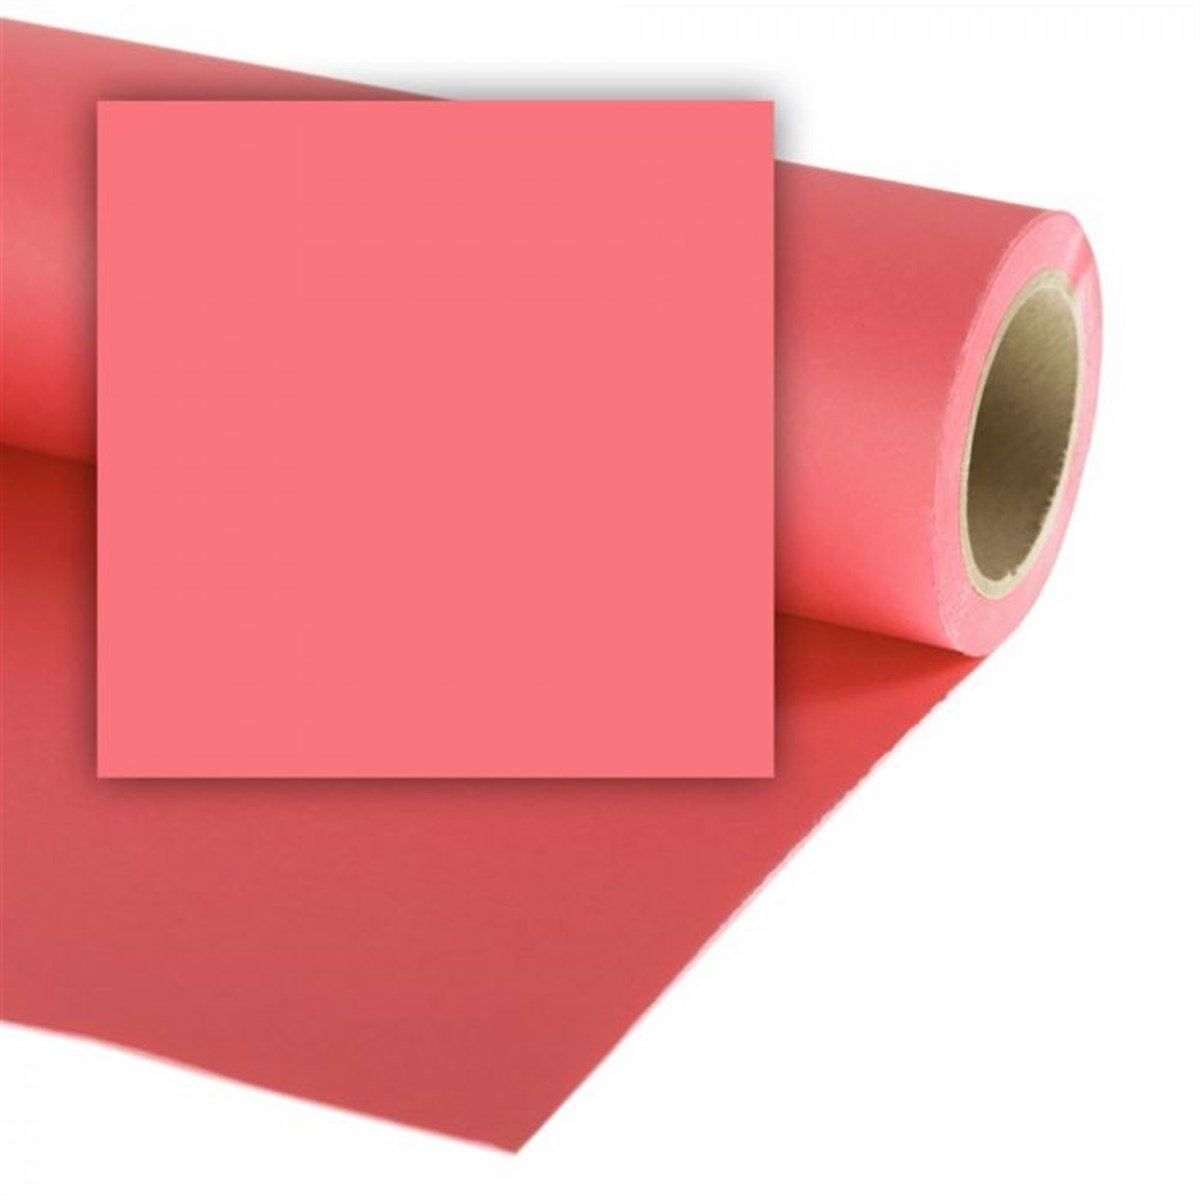 Colorama Coral Pink - 46 Kağıt Fon